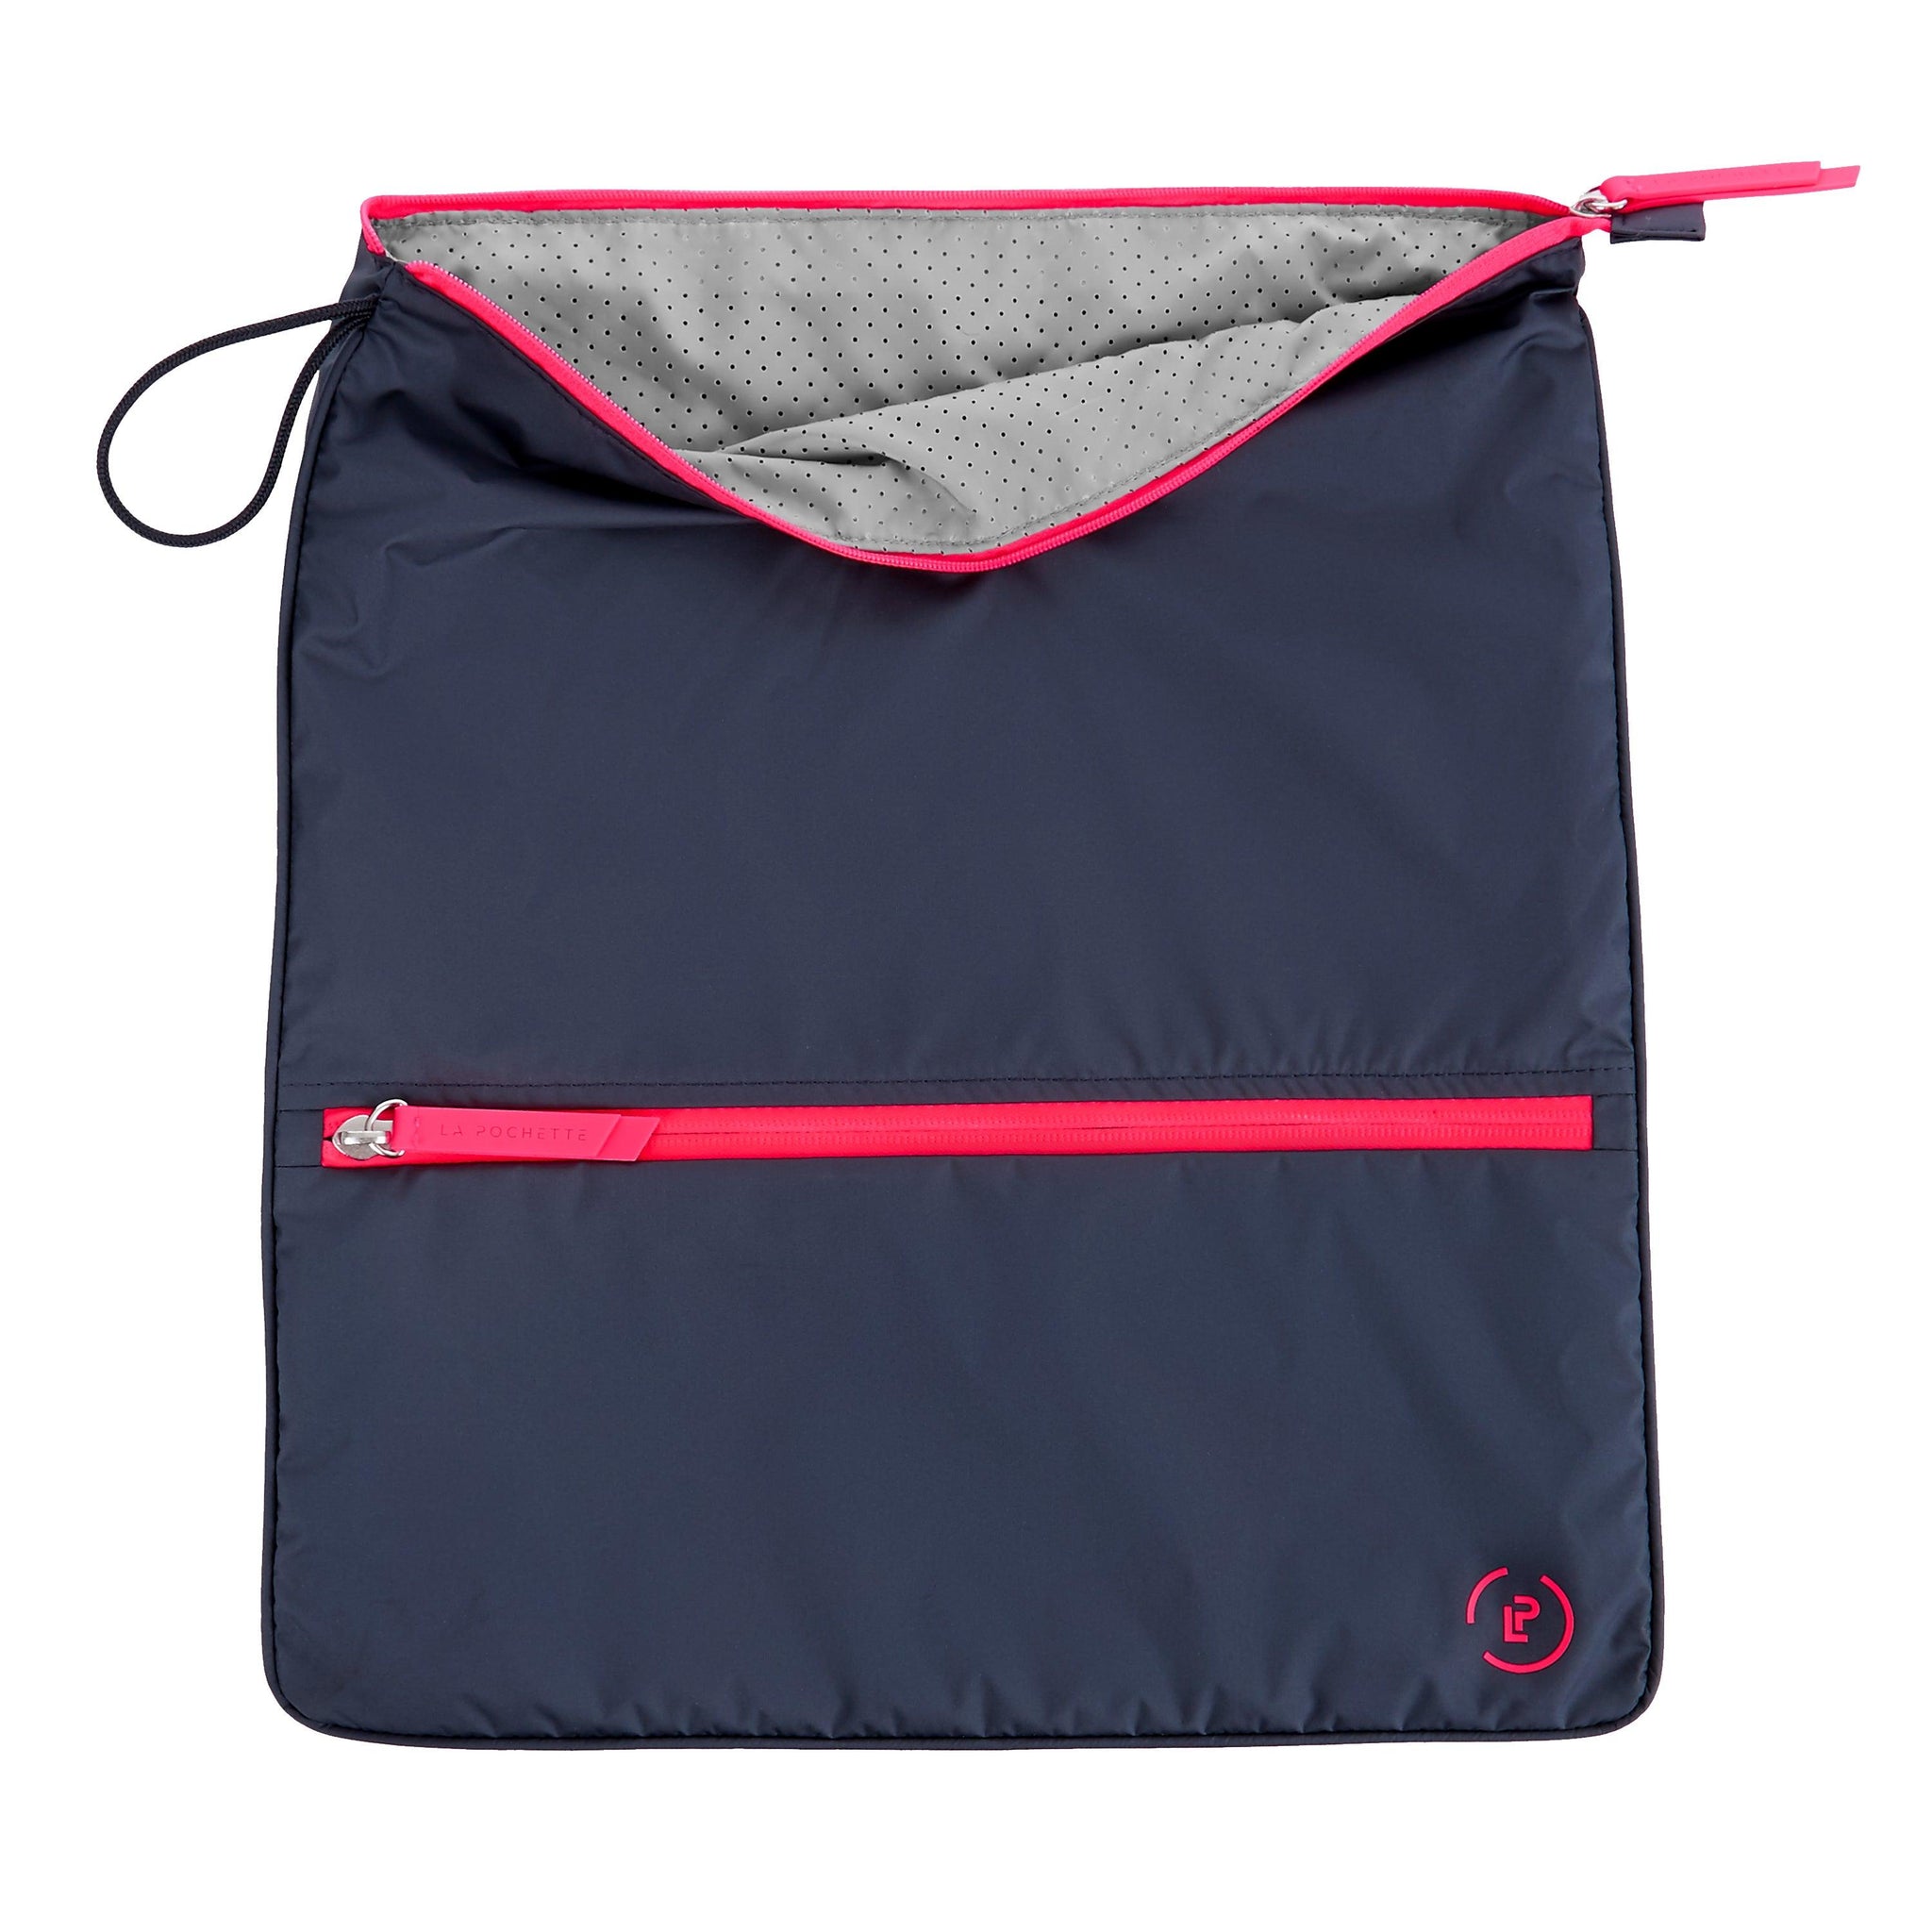 Panchtatava Black-Pink Dori Lock Fabric Exercise Mat Carry Bag